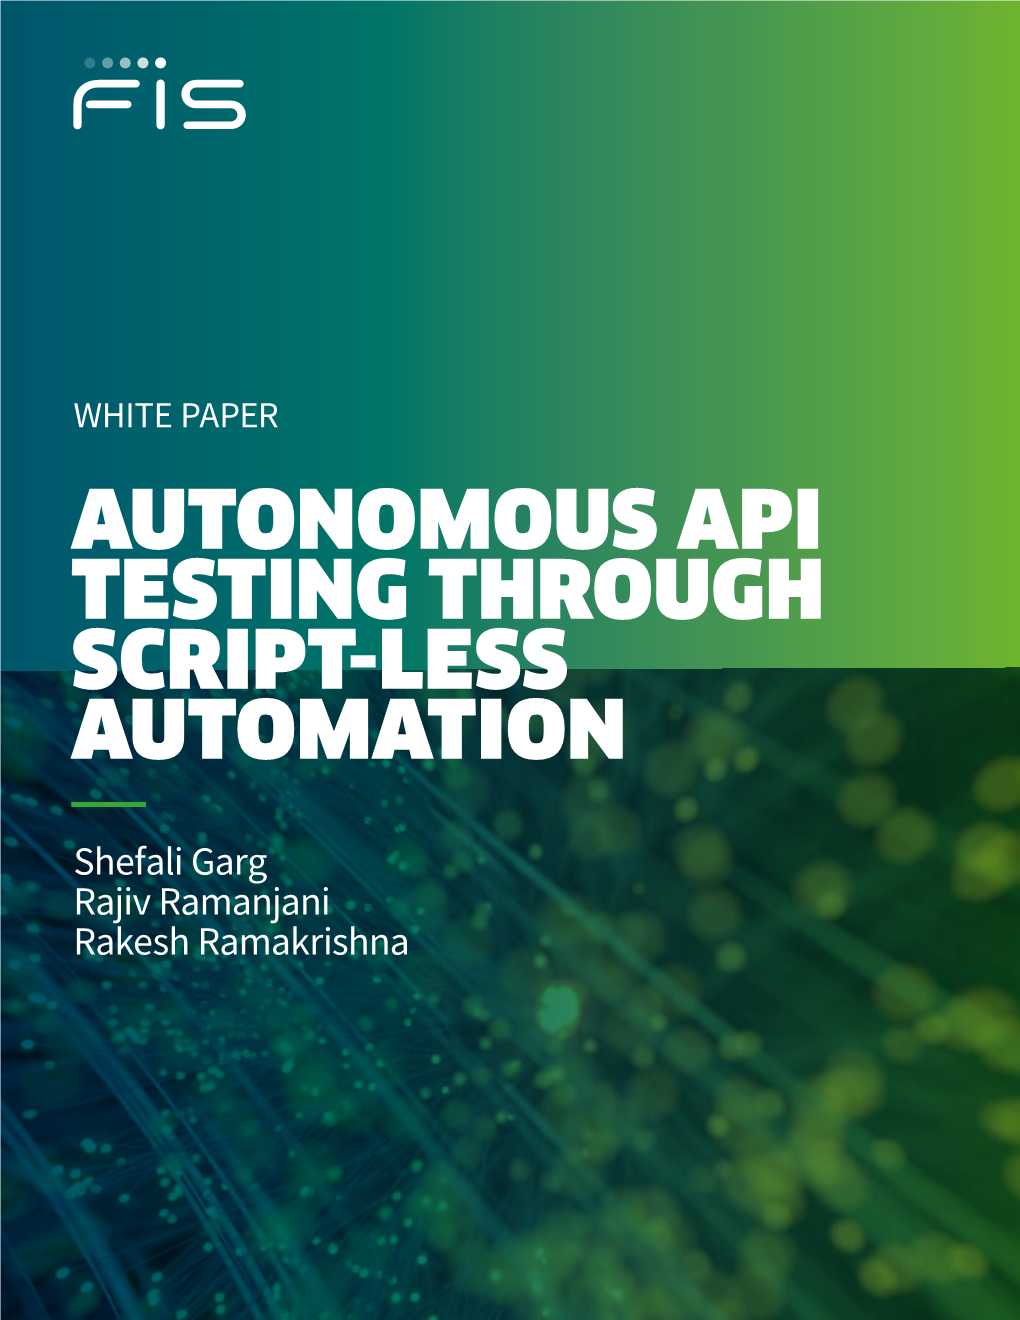 White Paper Autonomous Api Testing Through Script-Less Automation